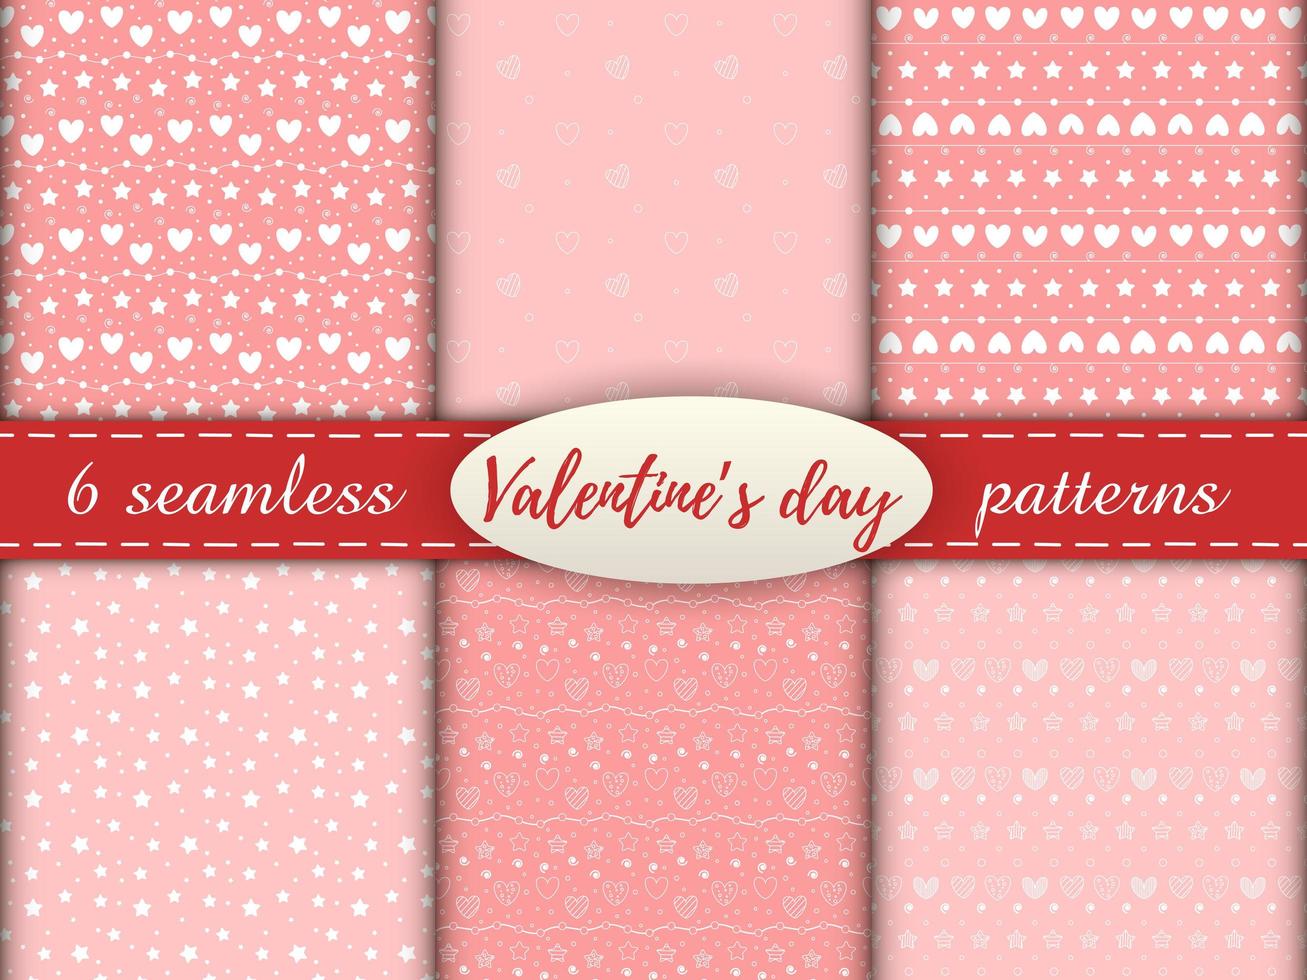 patrones románticos sin fisuras con un corazón. Feliz día de San Valentín. conjunto de 6 patrones con corazones blancos, puntos y estrellas sobre un fondo rosa. vector